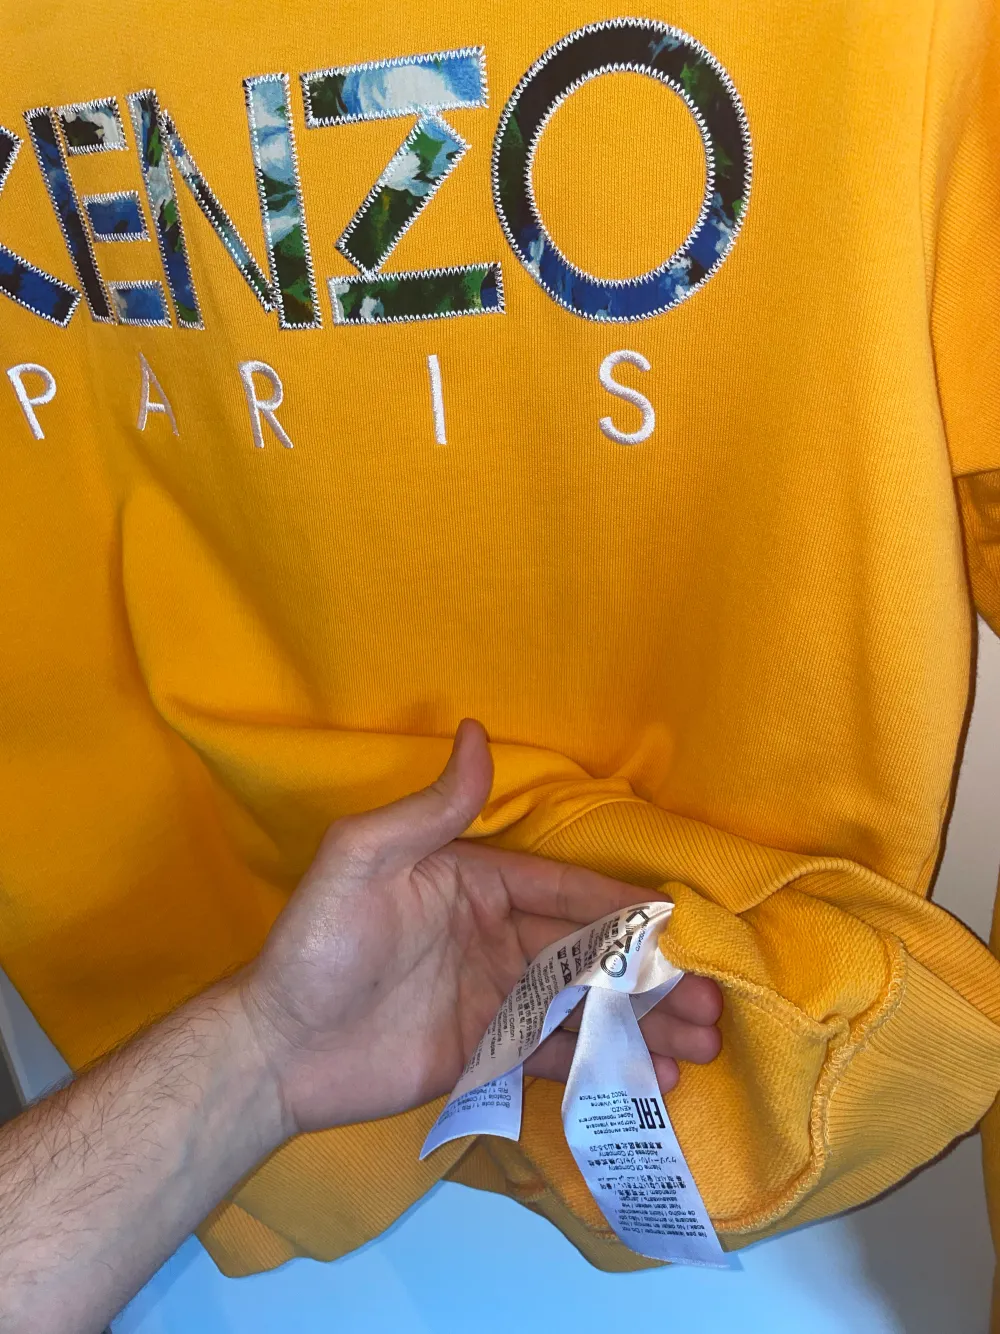 Kenzo Pris orange unik tjocktröja   Skick: 9/10 Storlek: S  Säljs då jag tömmer garderoben och vill bli av med gamla kläder.. Hoodies.